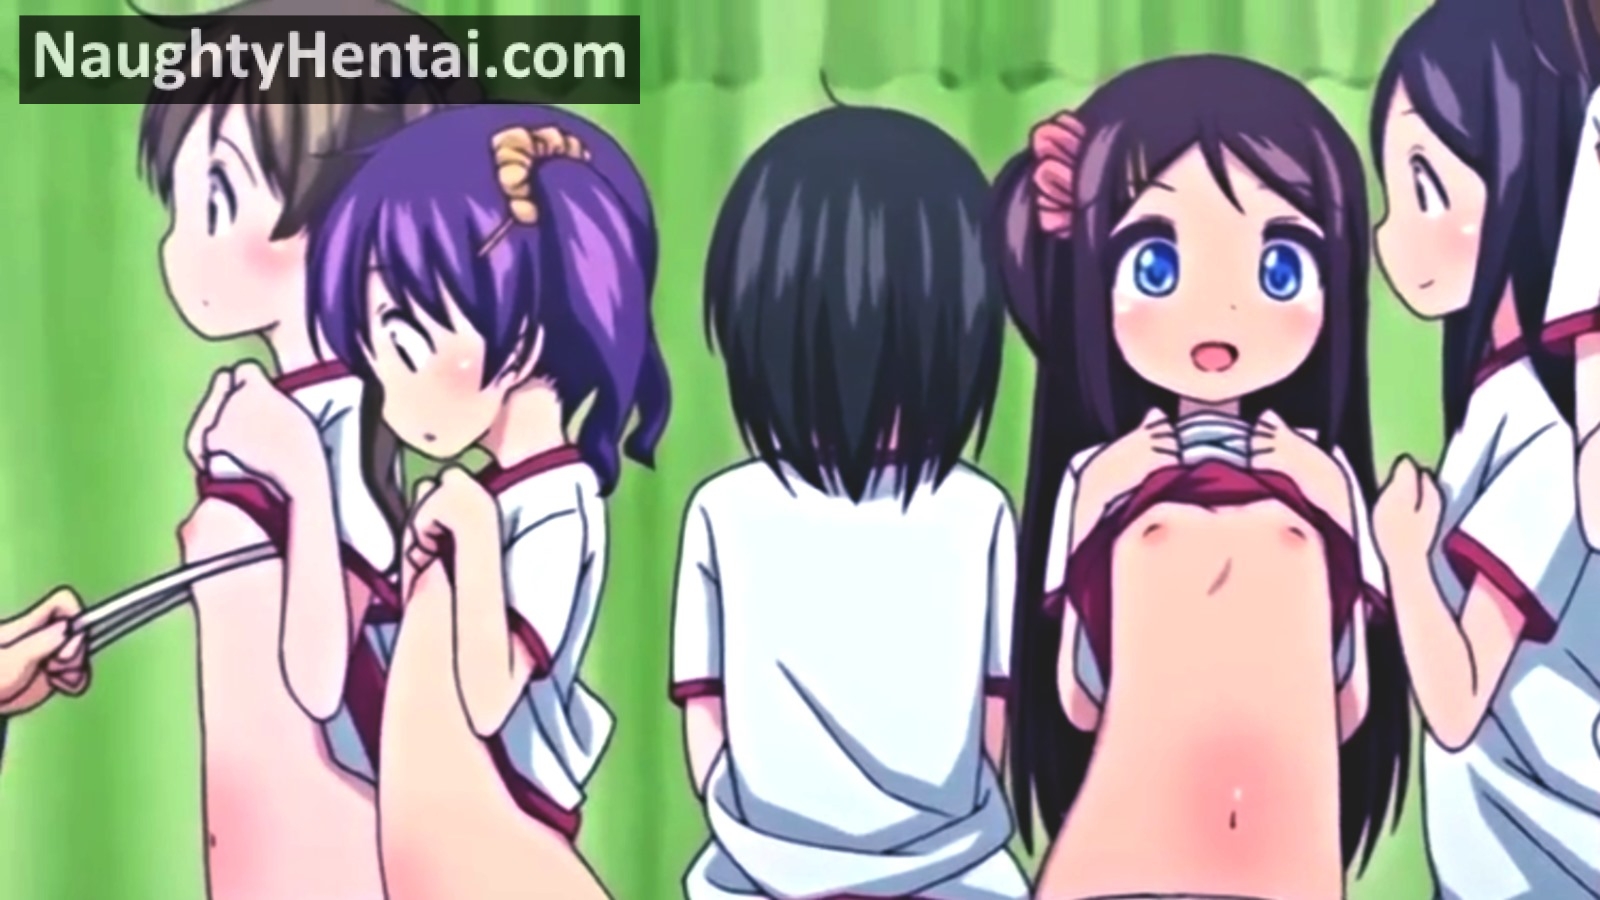 1600px x 900px - Ecchi Na Shintai Sokutei Anime Edition | Naughty Hentai Sex ...